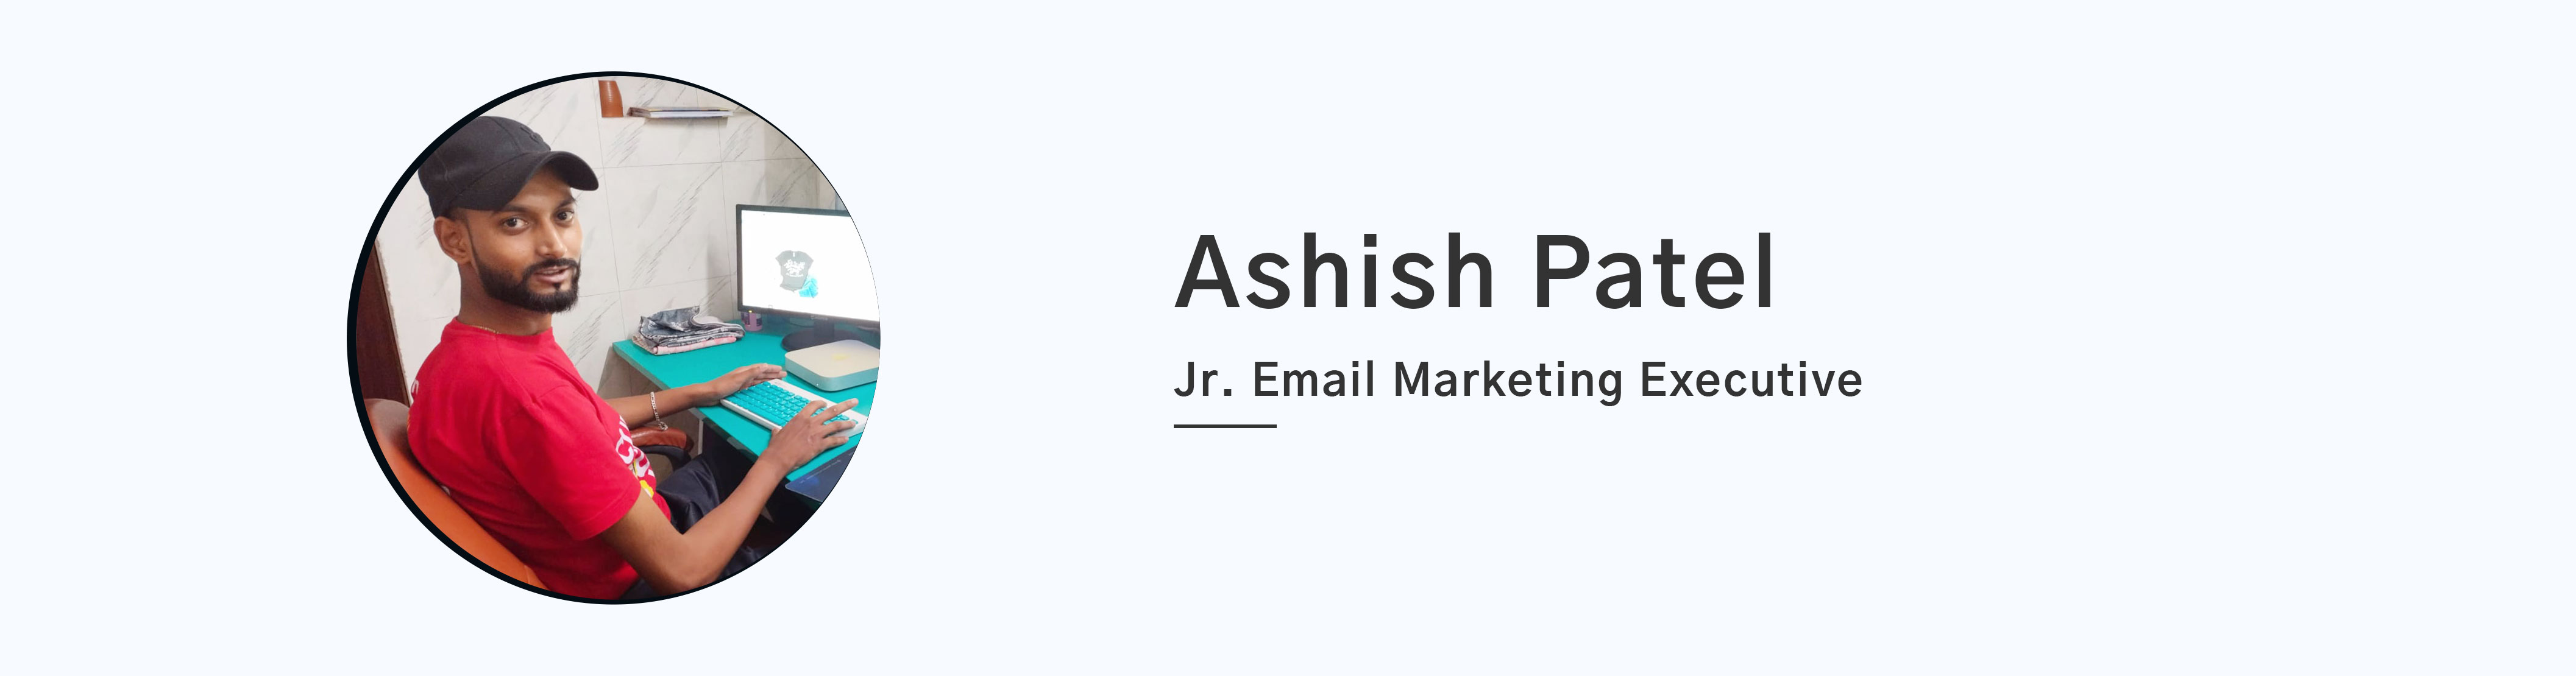 ashish-banner